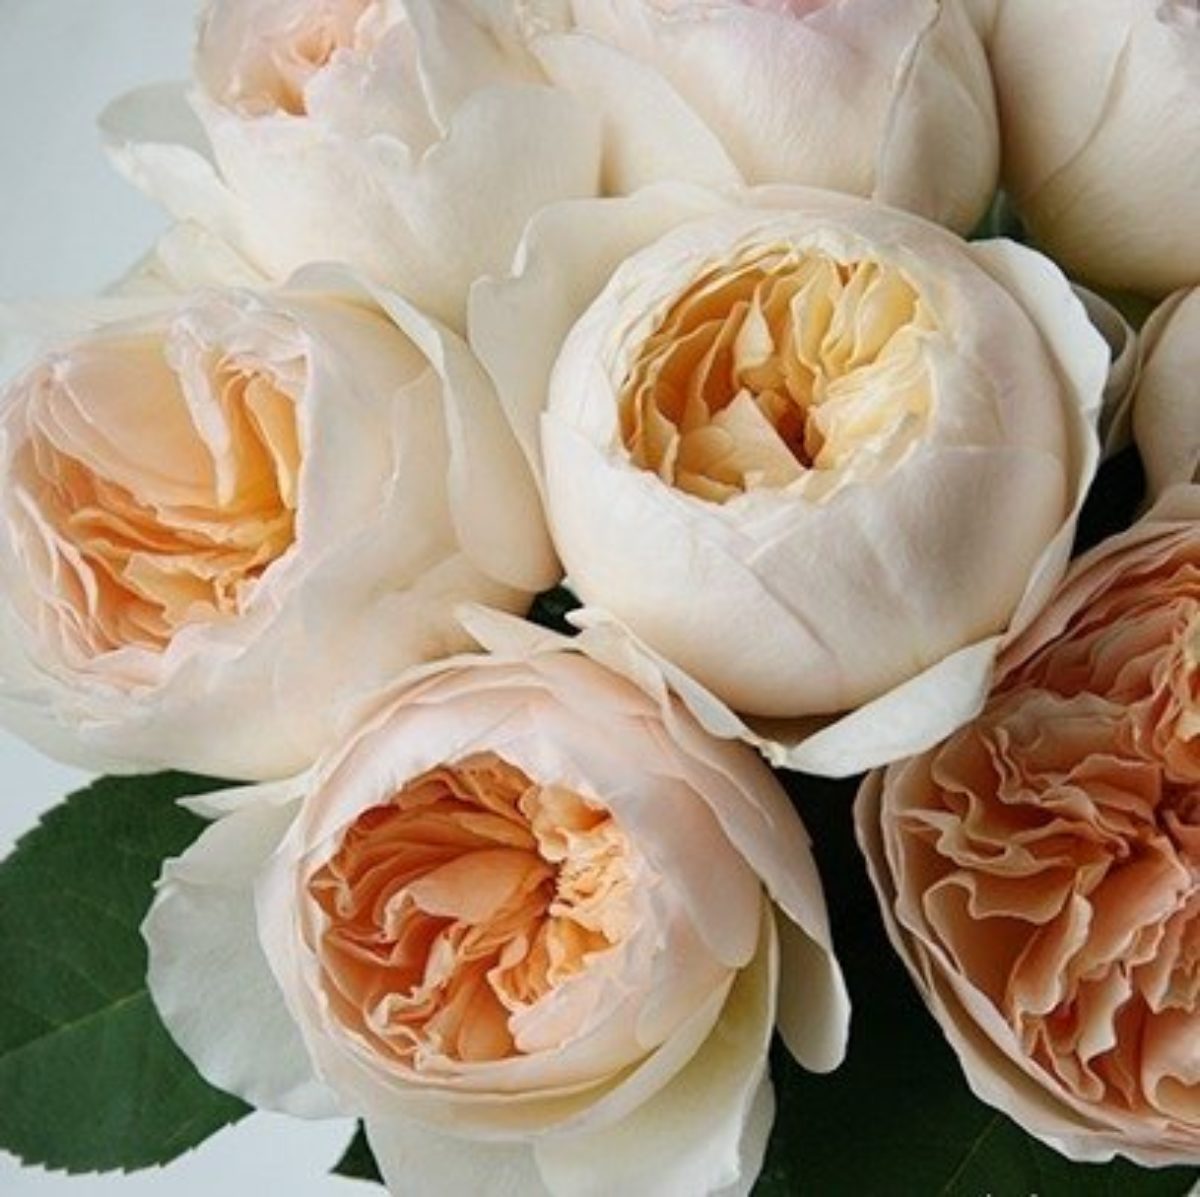 Пионовидная роза Джульетта